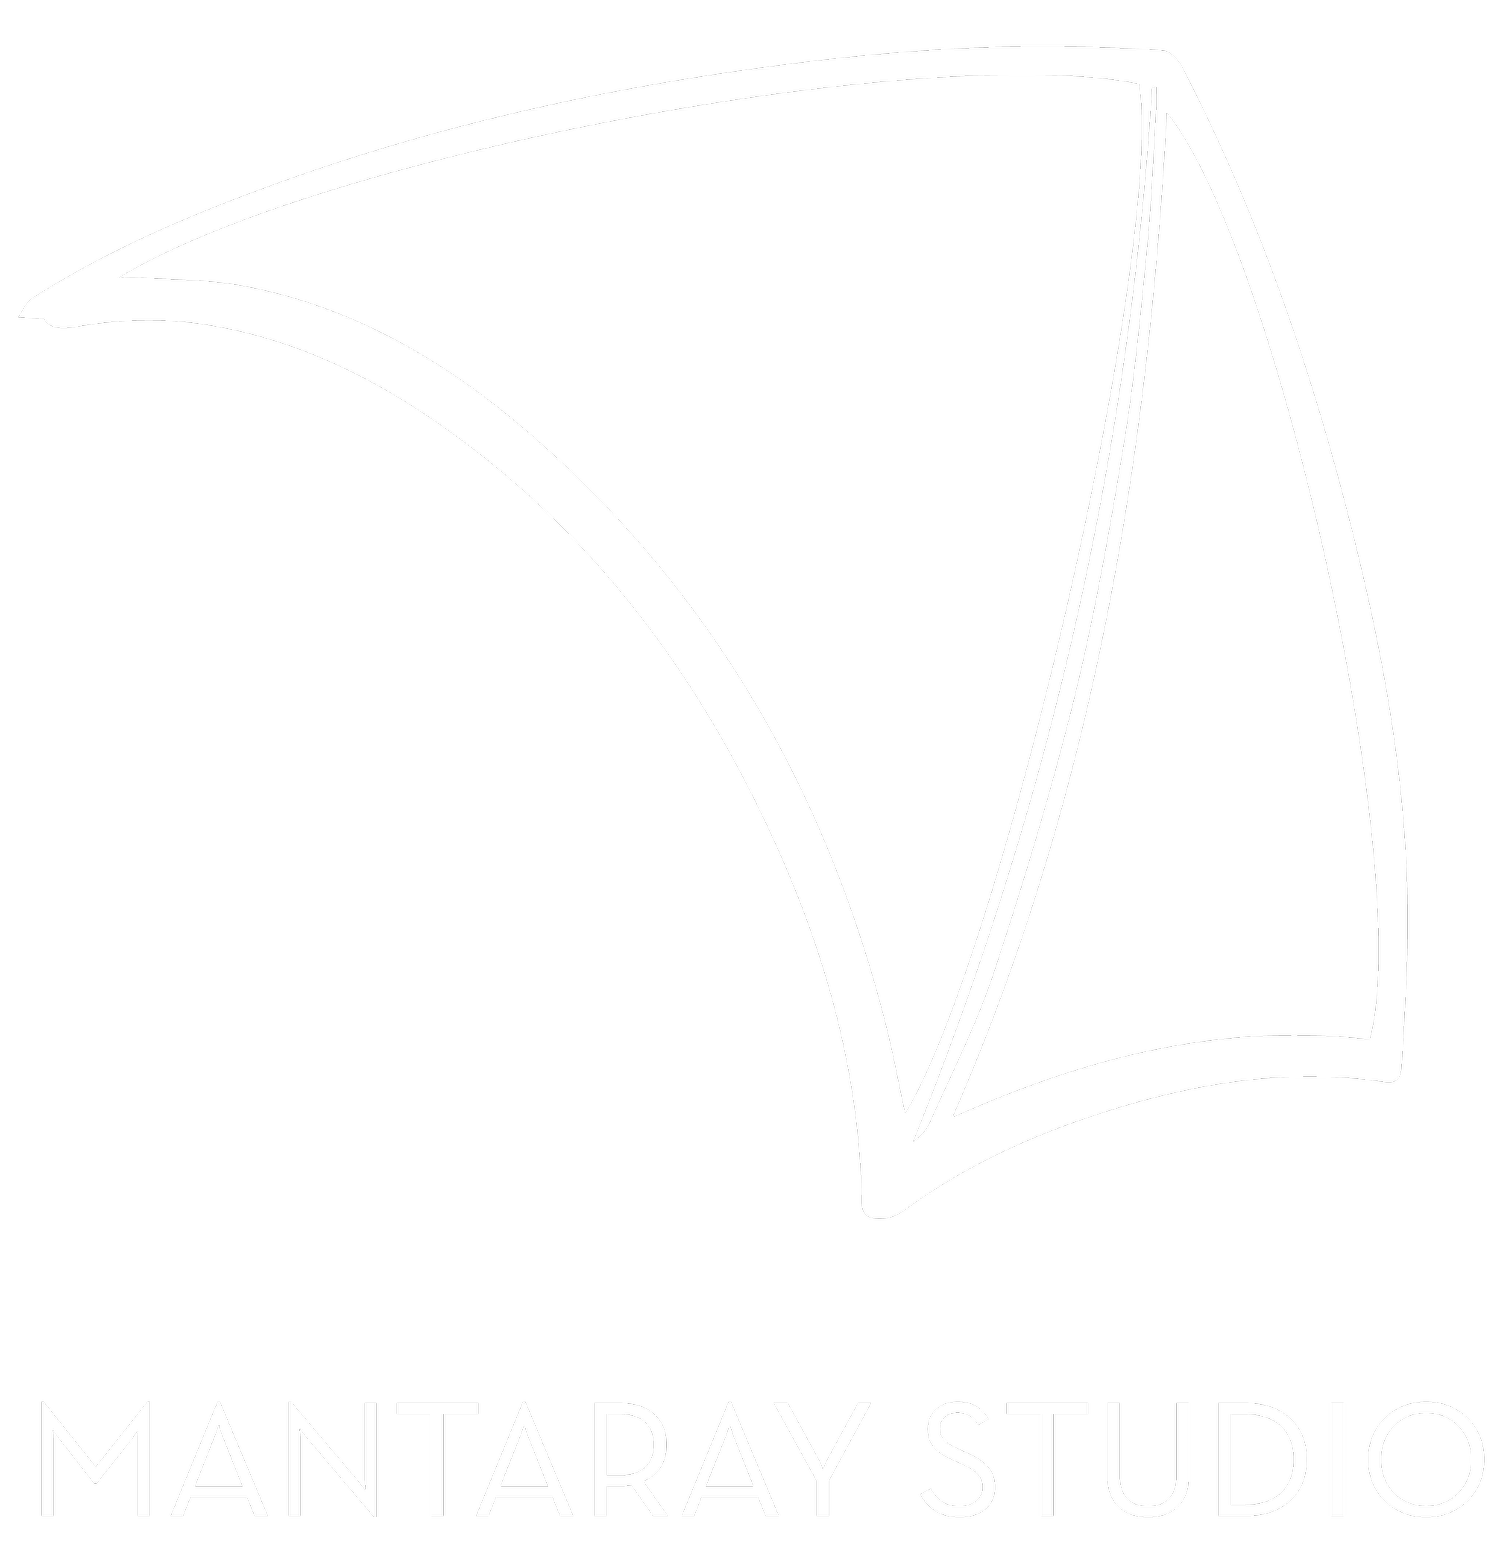 www.mantaray.studio